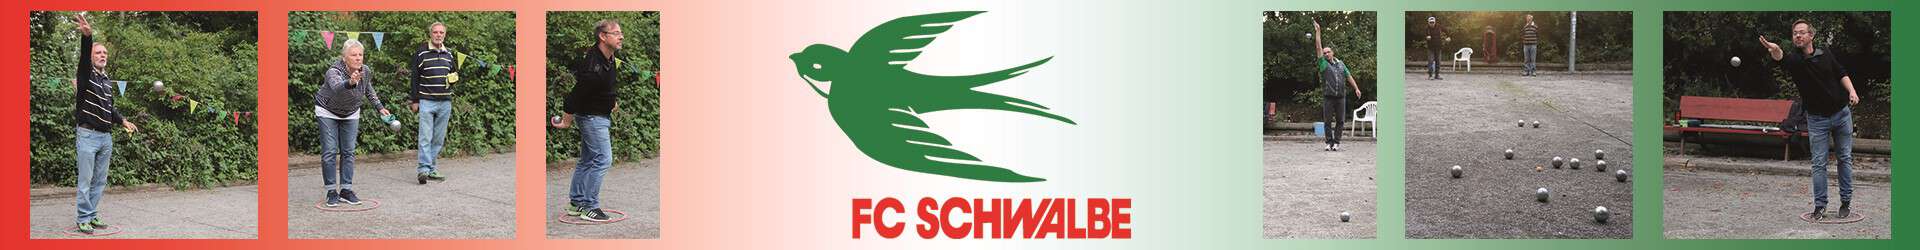 Boule Petanqué FC Schwalbe Hannover